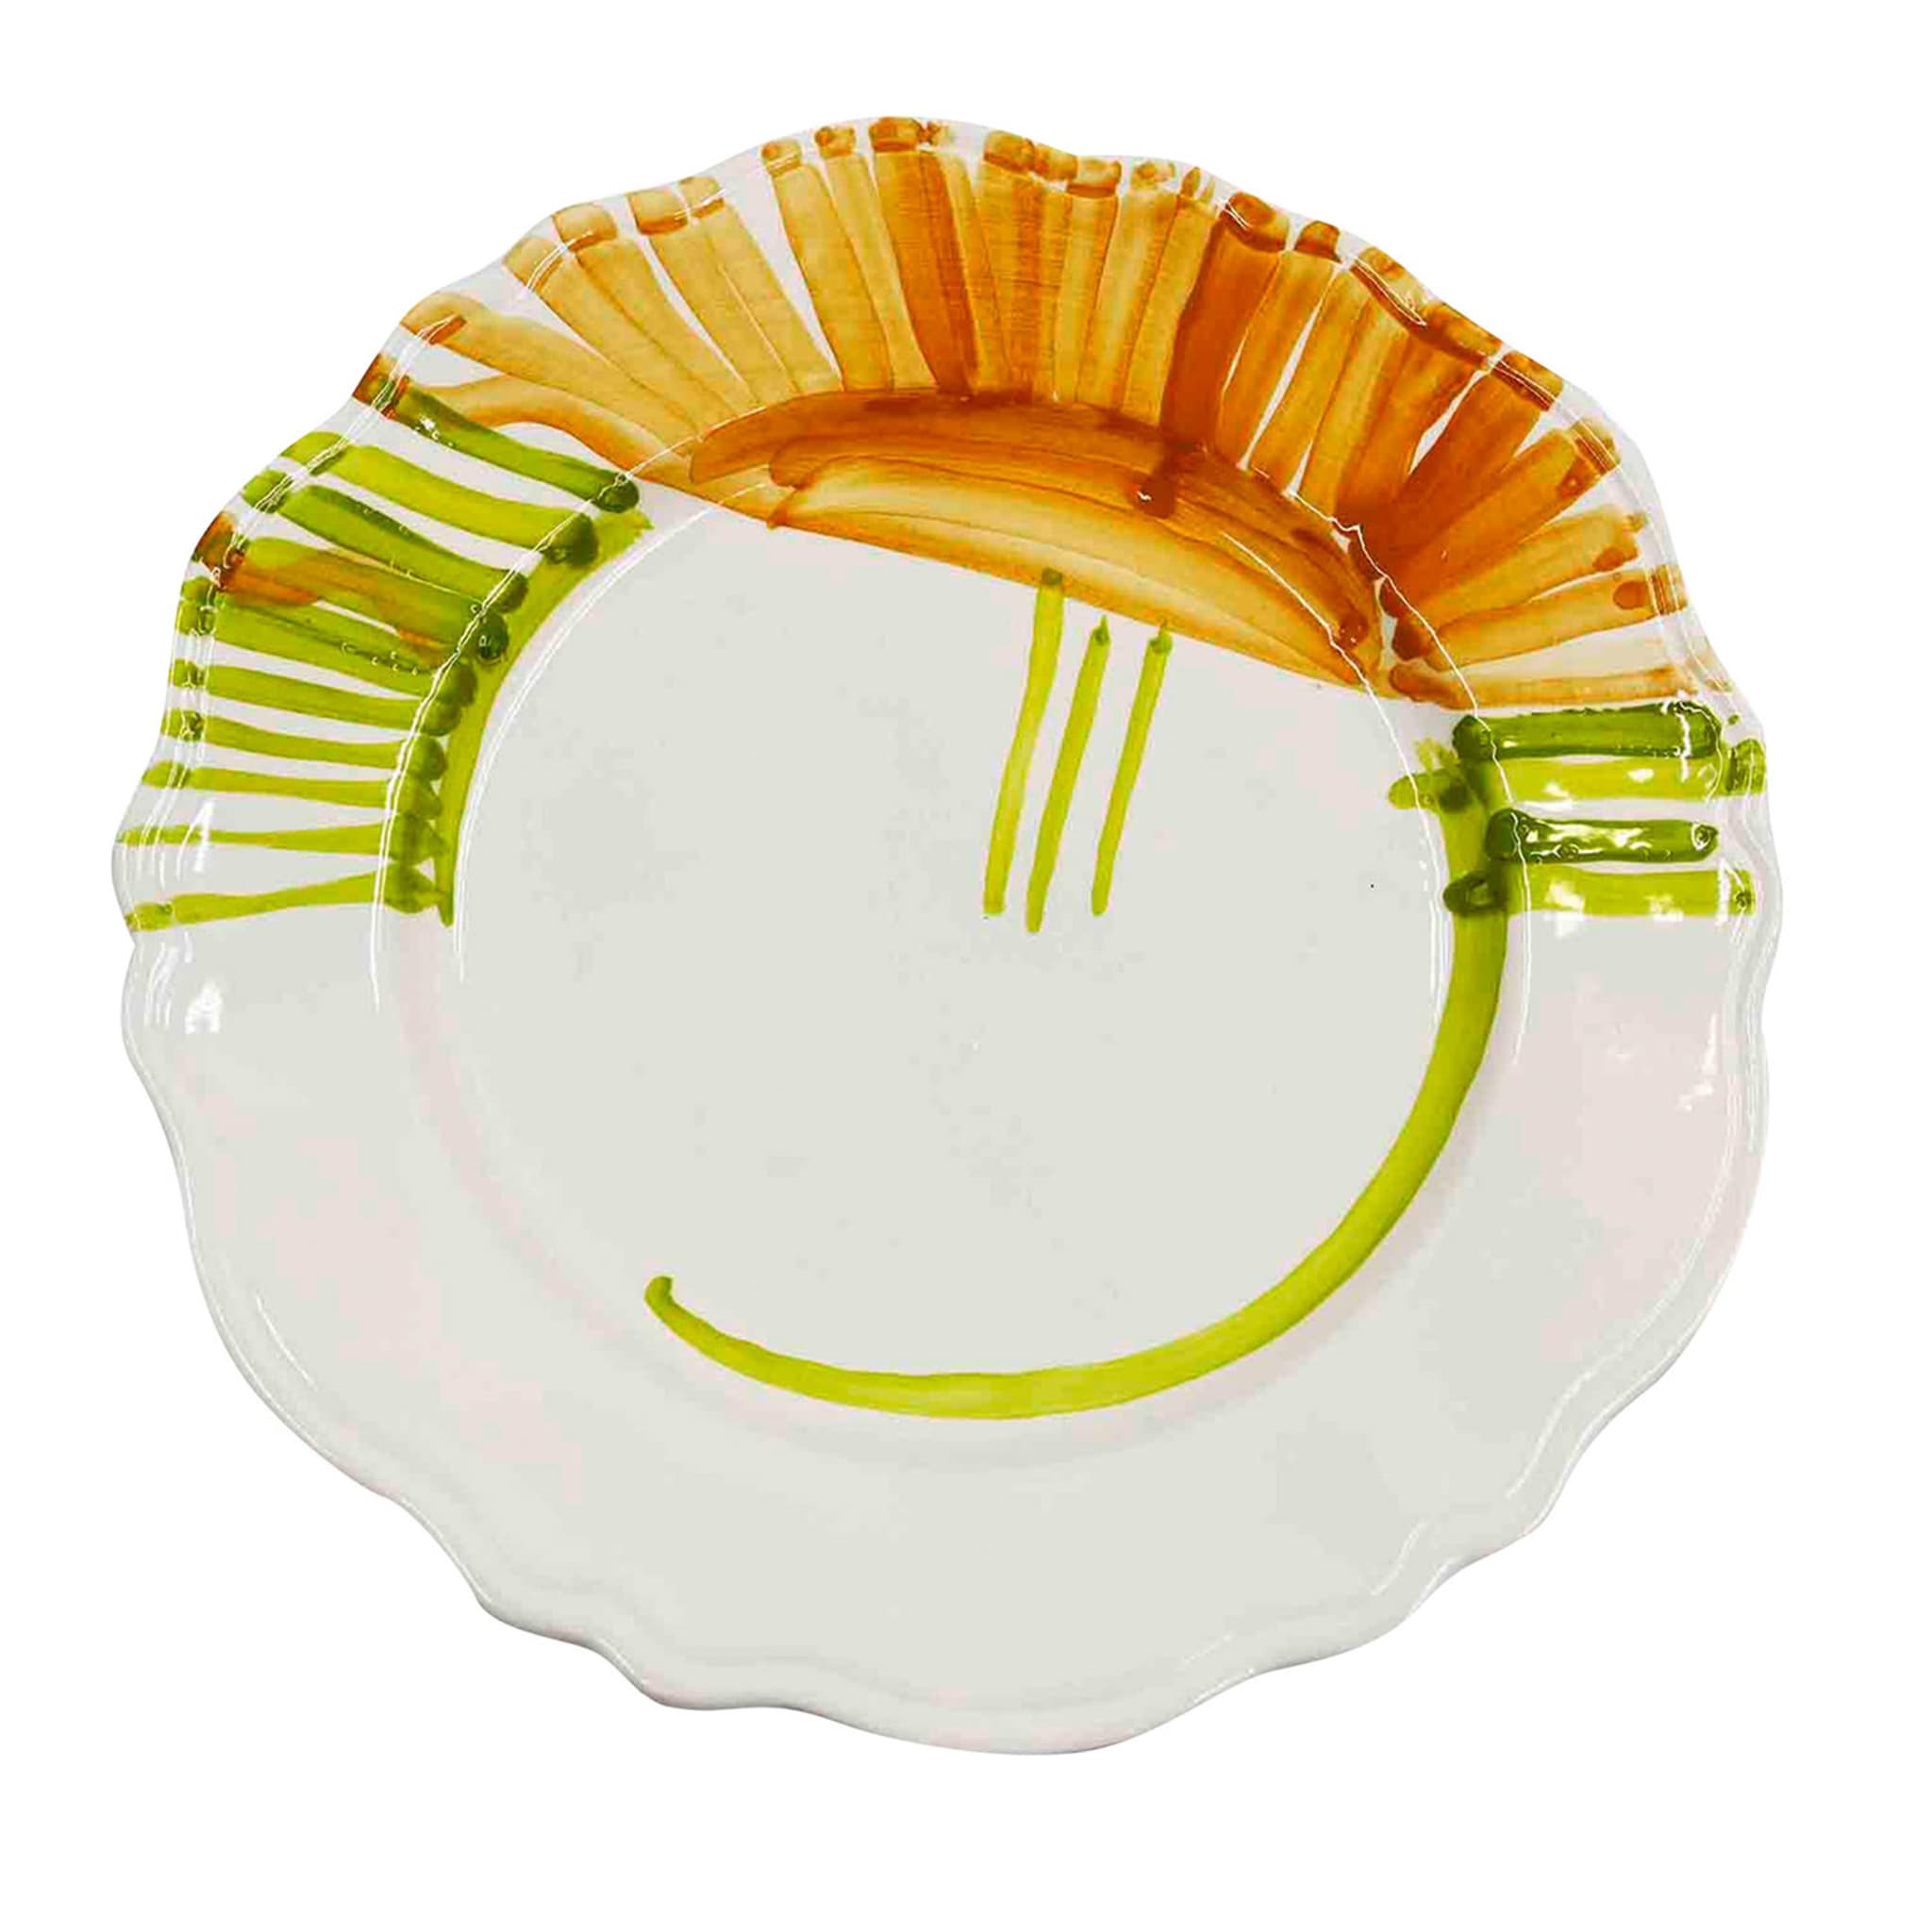 Premium Handcrafted Artisan Ceramic Plate